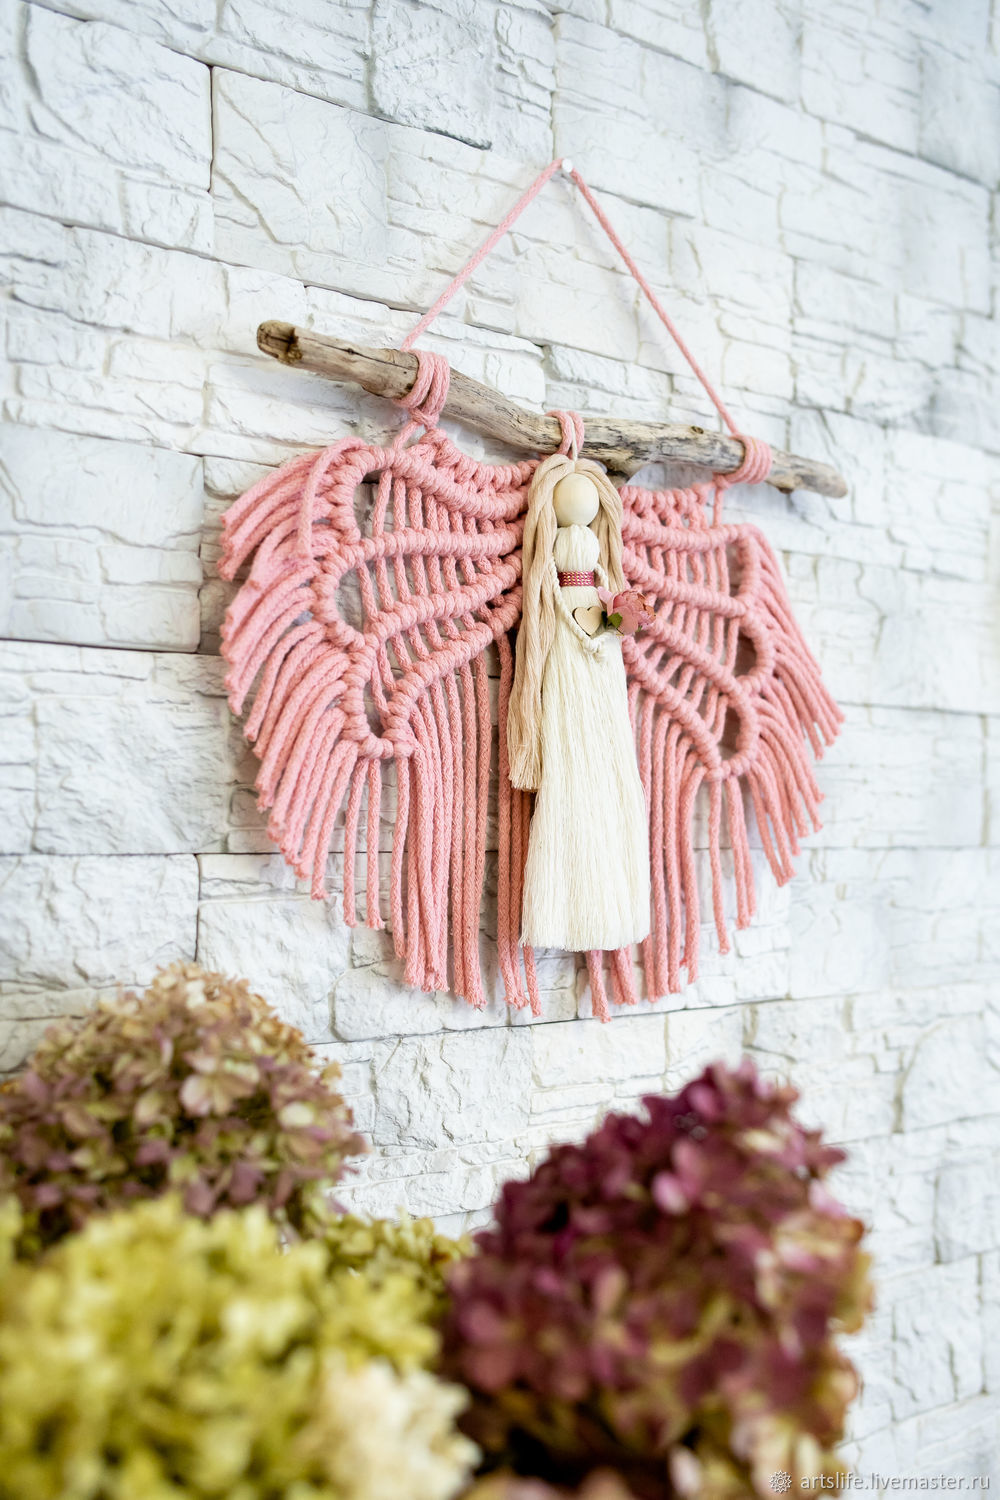  ангел с розовыми крыльями, Панно макраме, Новосибирск,  Фото №1